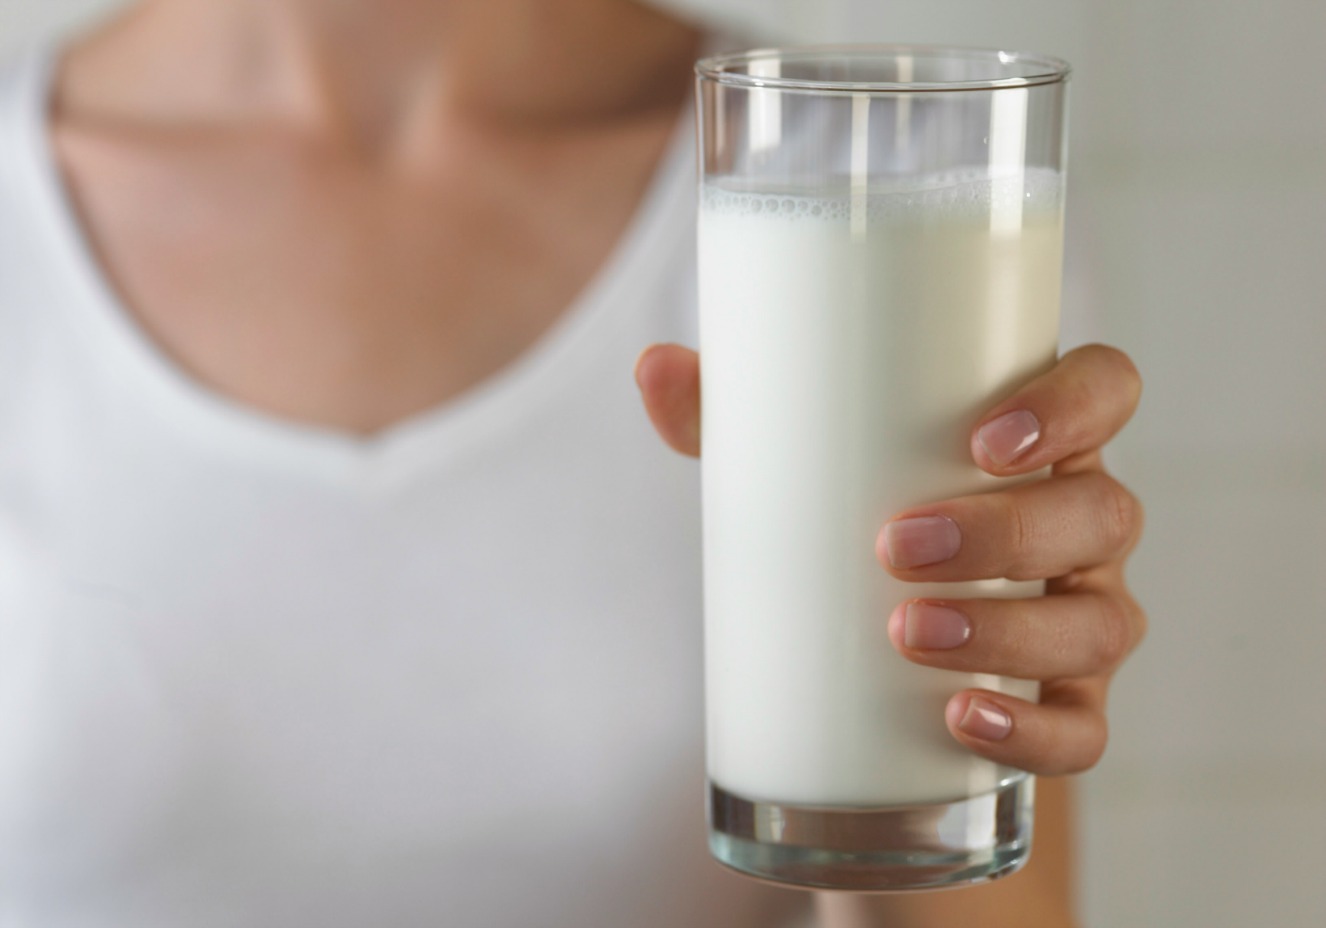         Không uống sữa, hãy dùng các sản phẩm từ sữa nếu bạn có vấn đề về tiêu hóa (ảnh minh họa)  